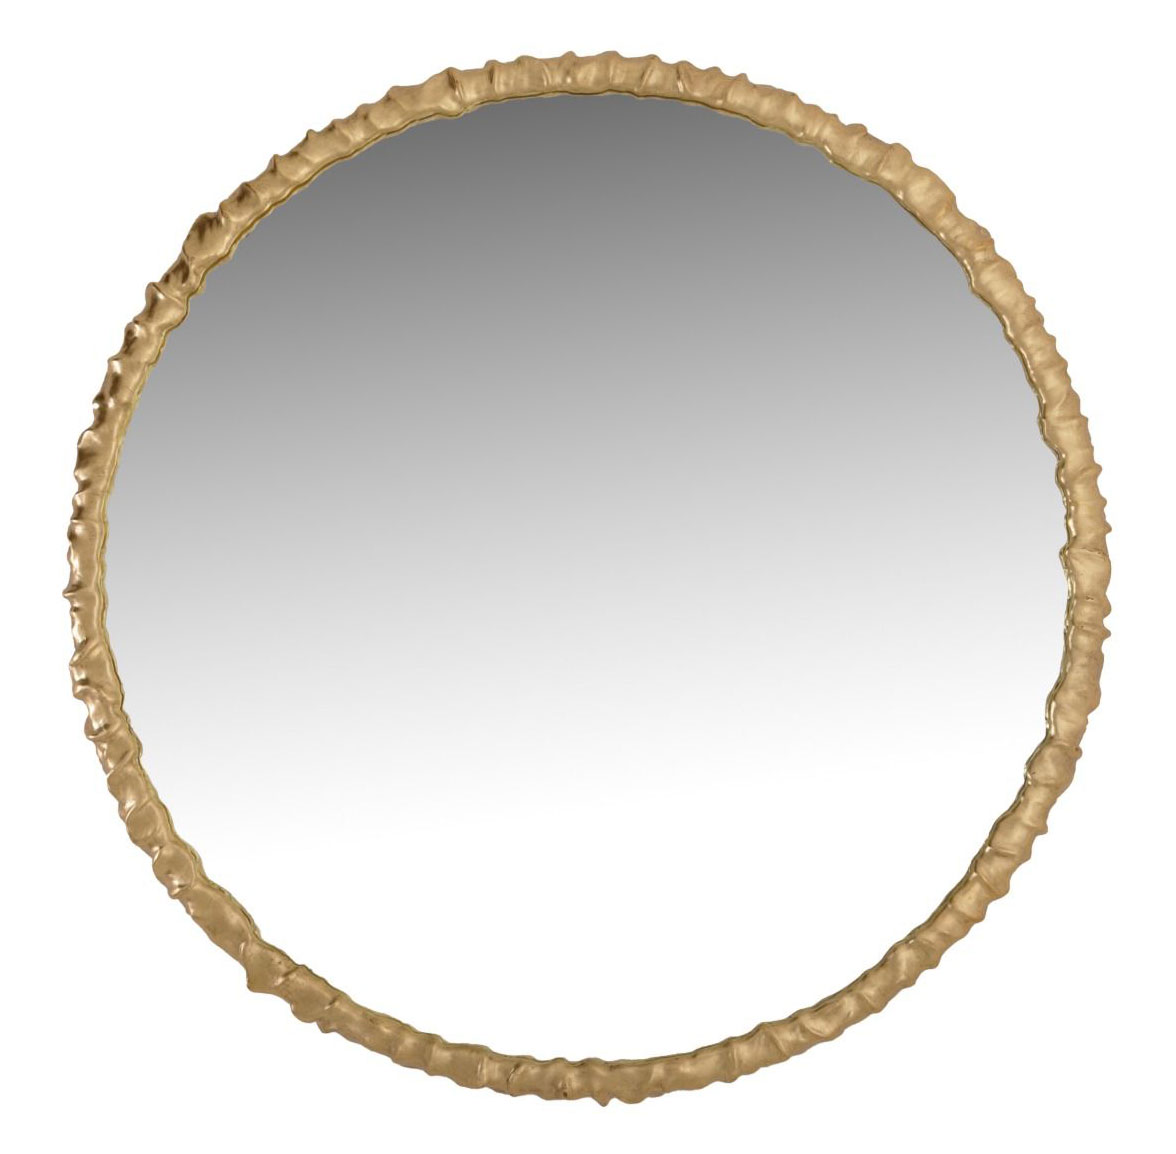 river round mirror